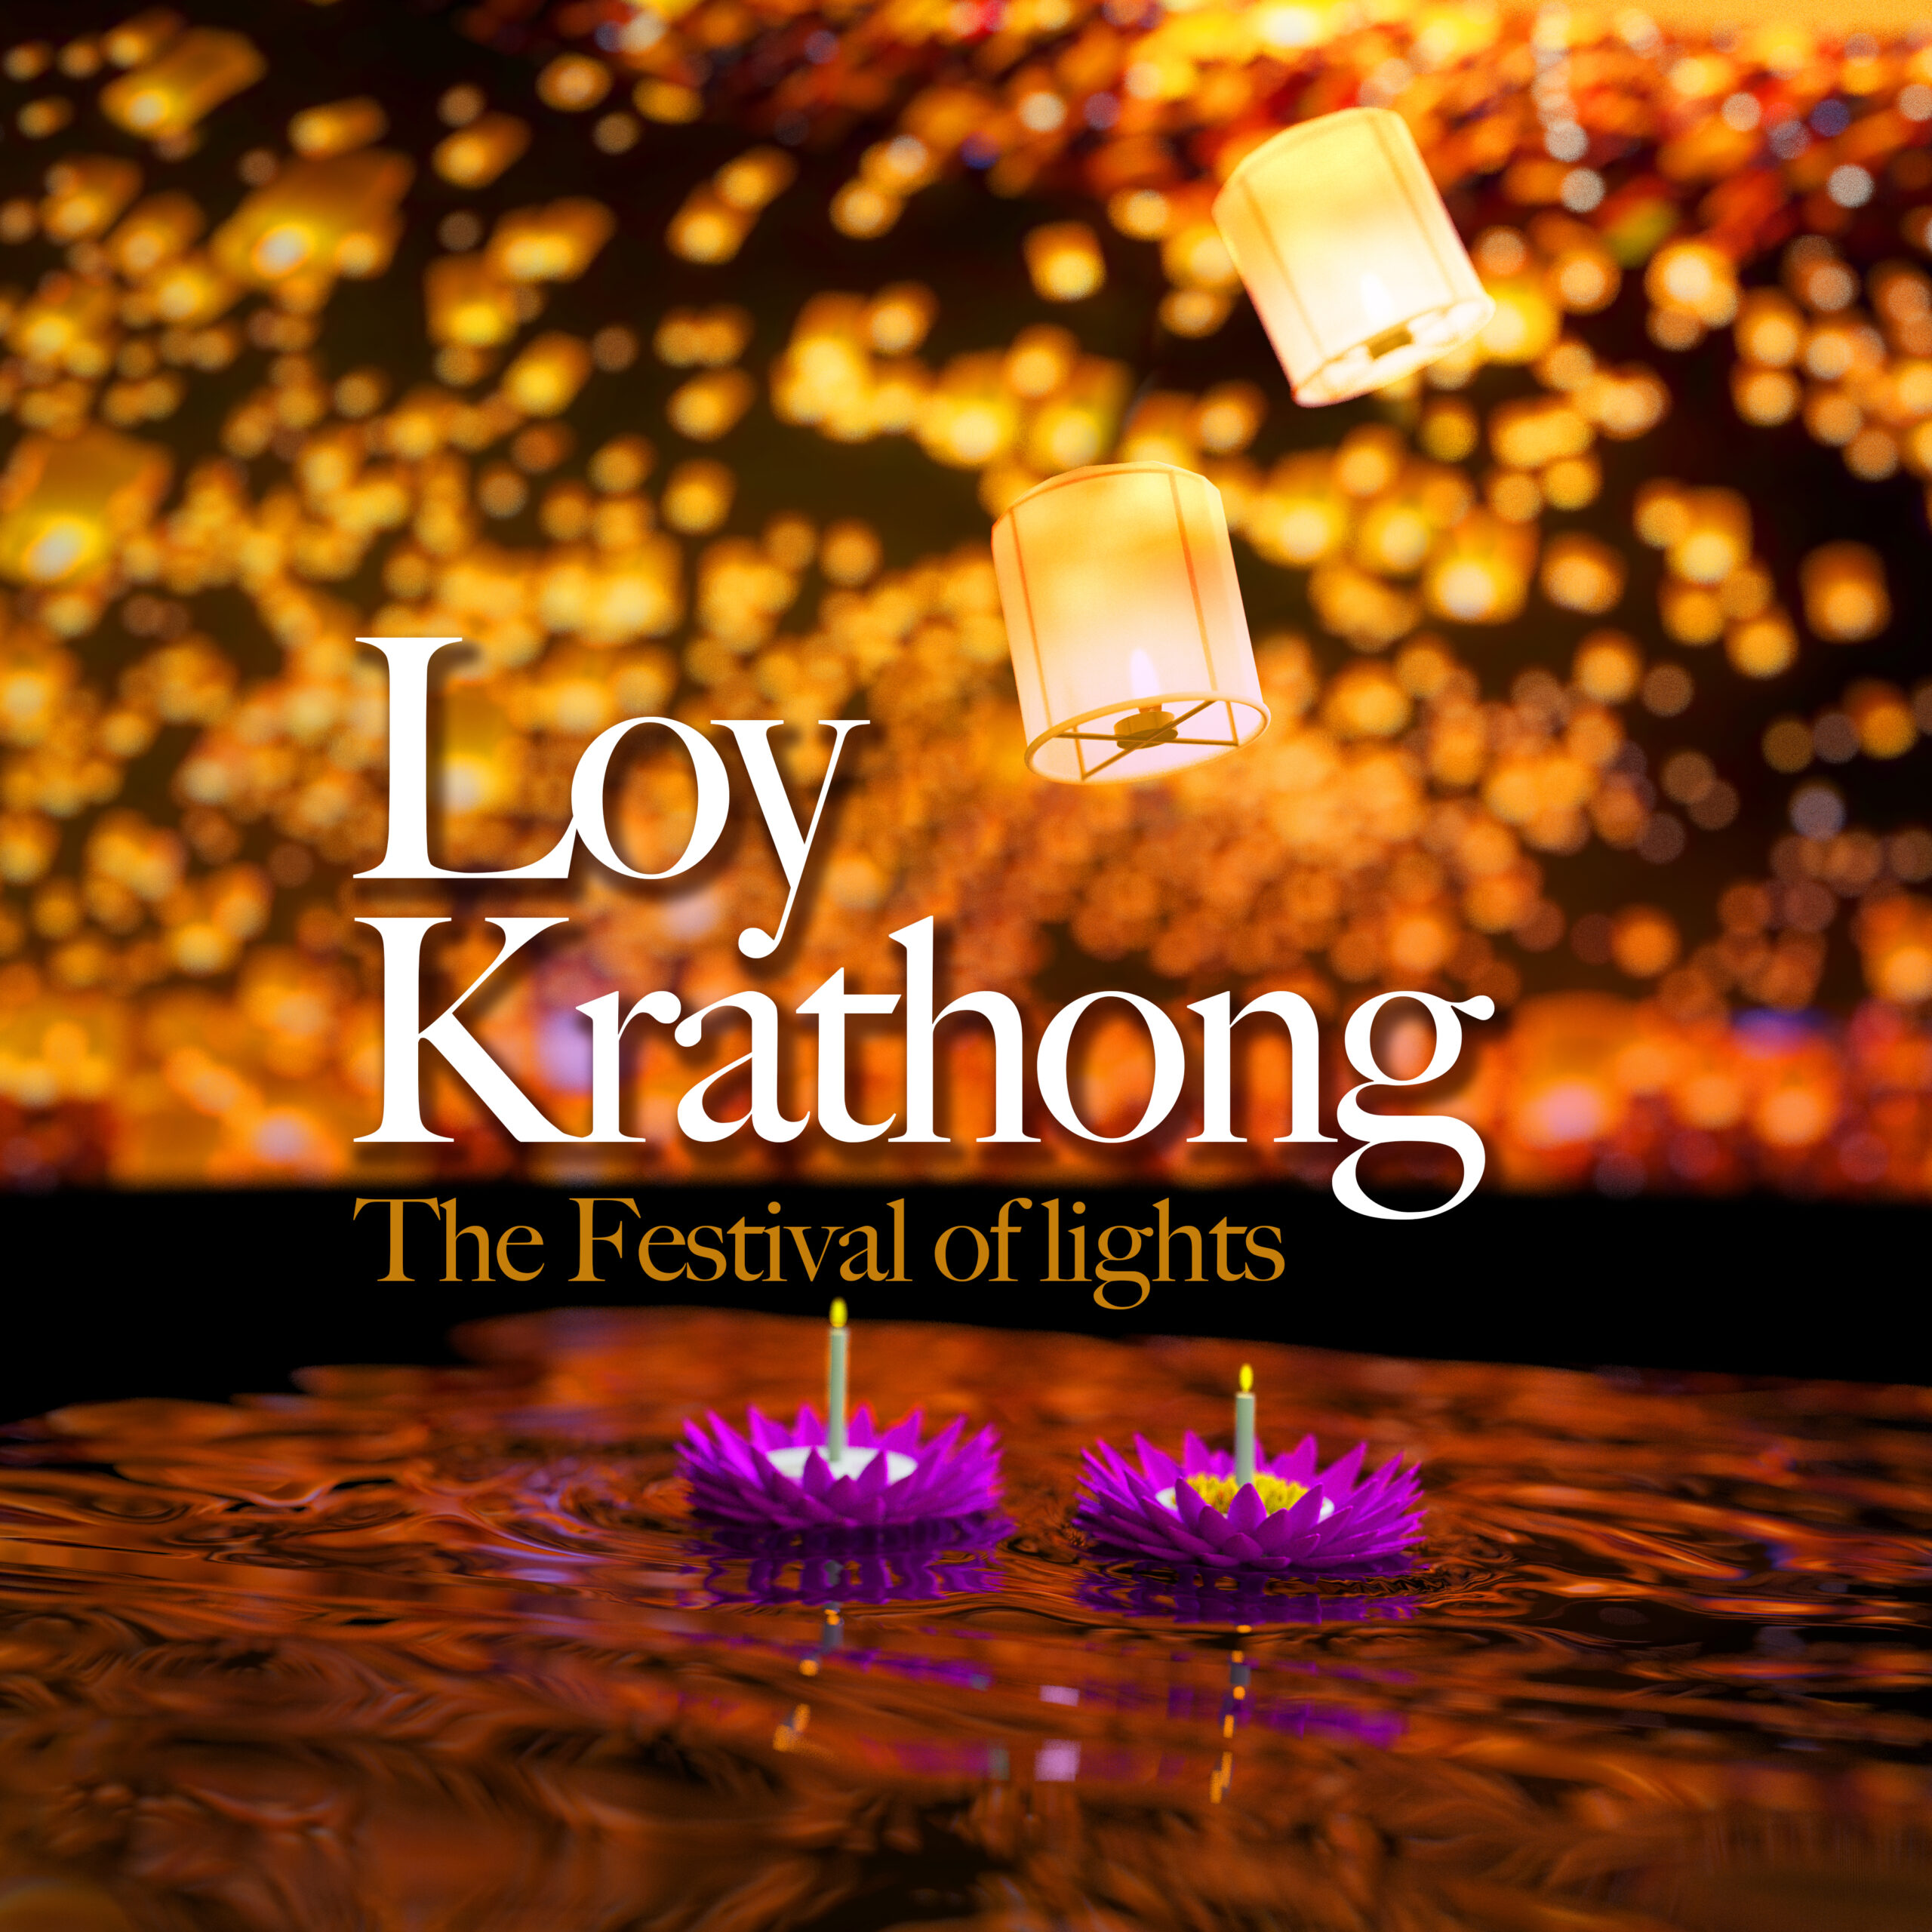 Loy Krathong in Phuket